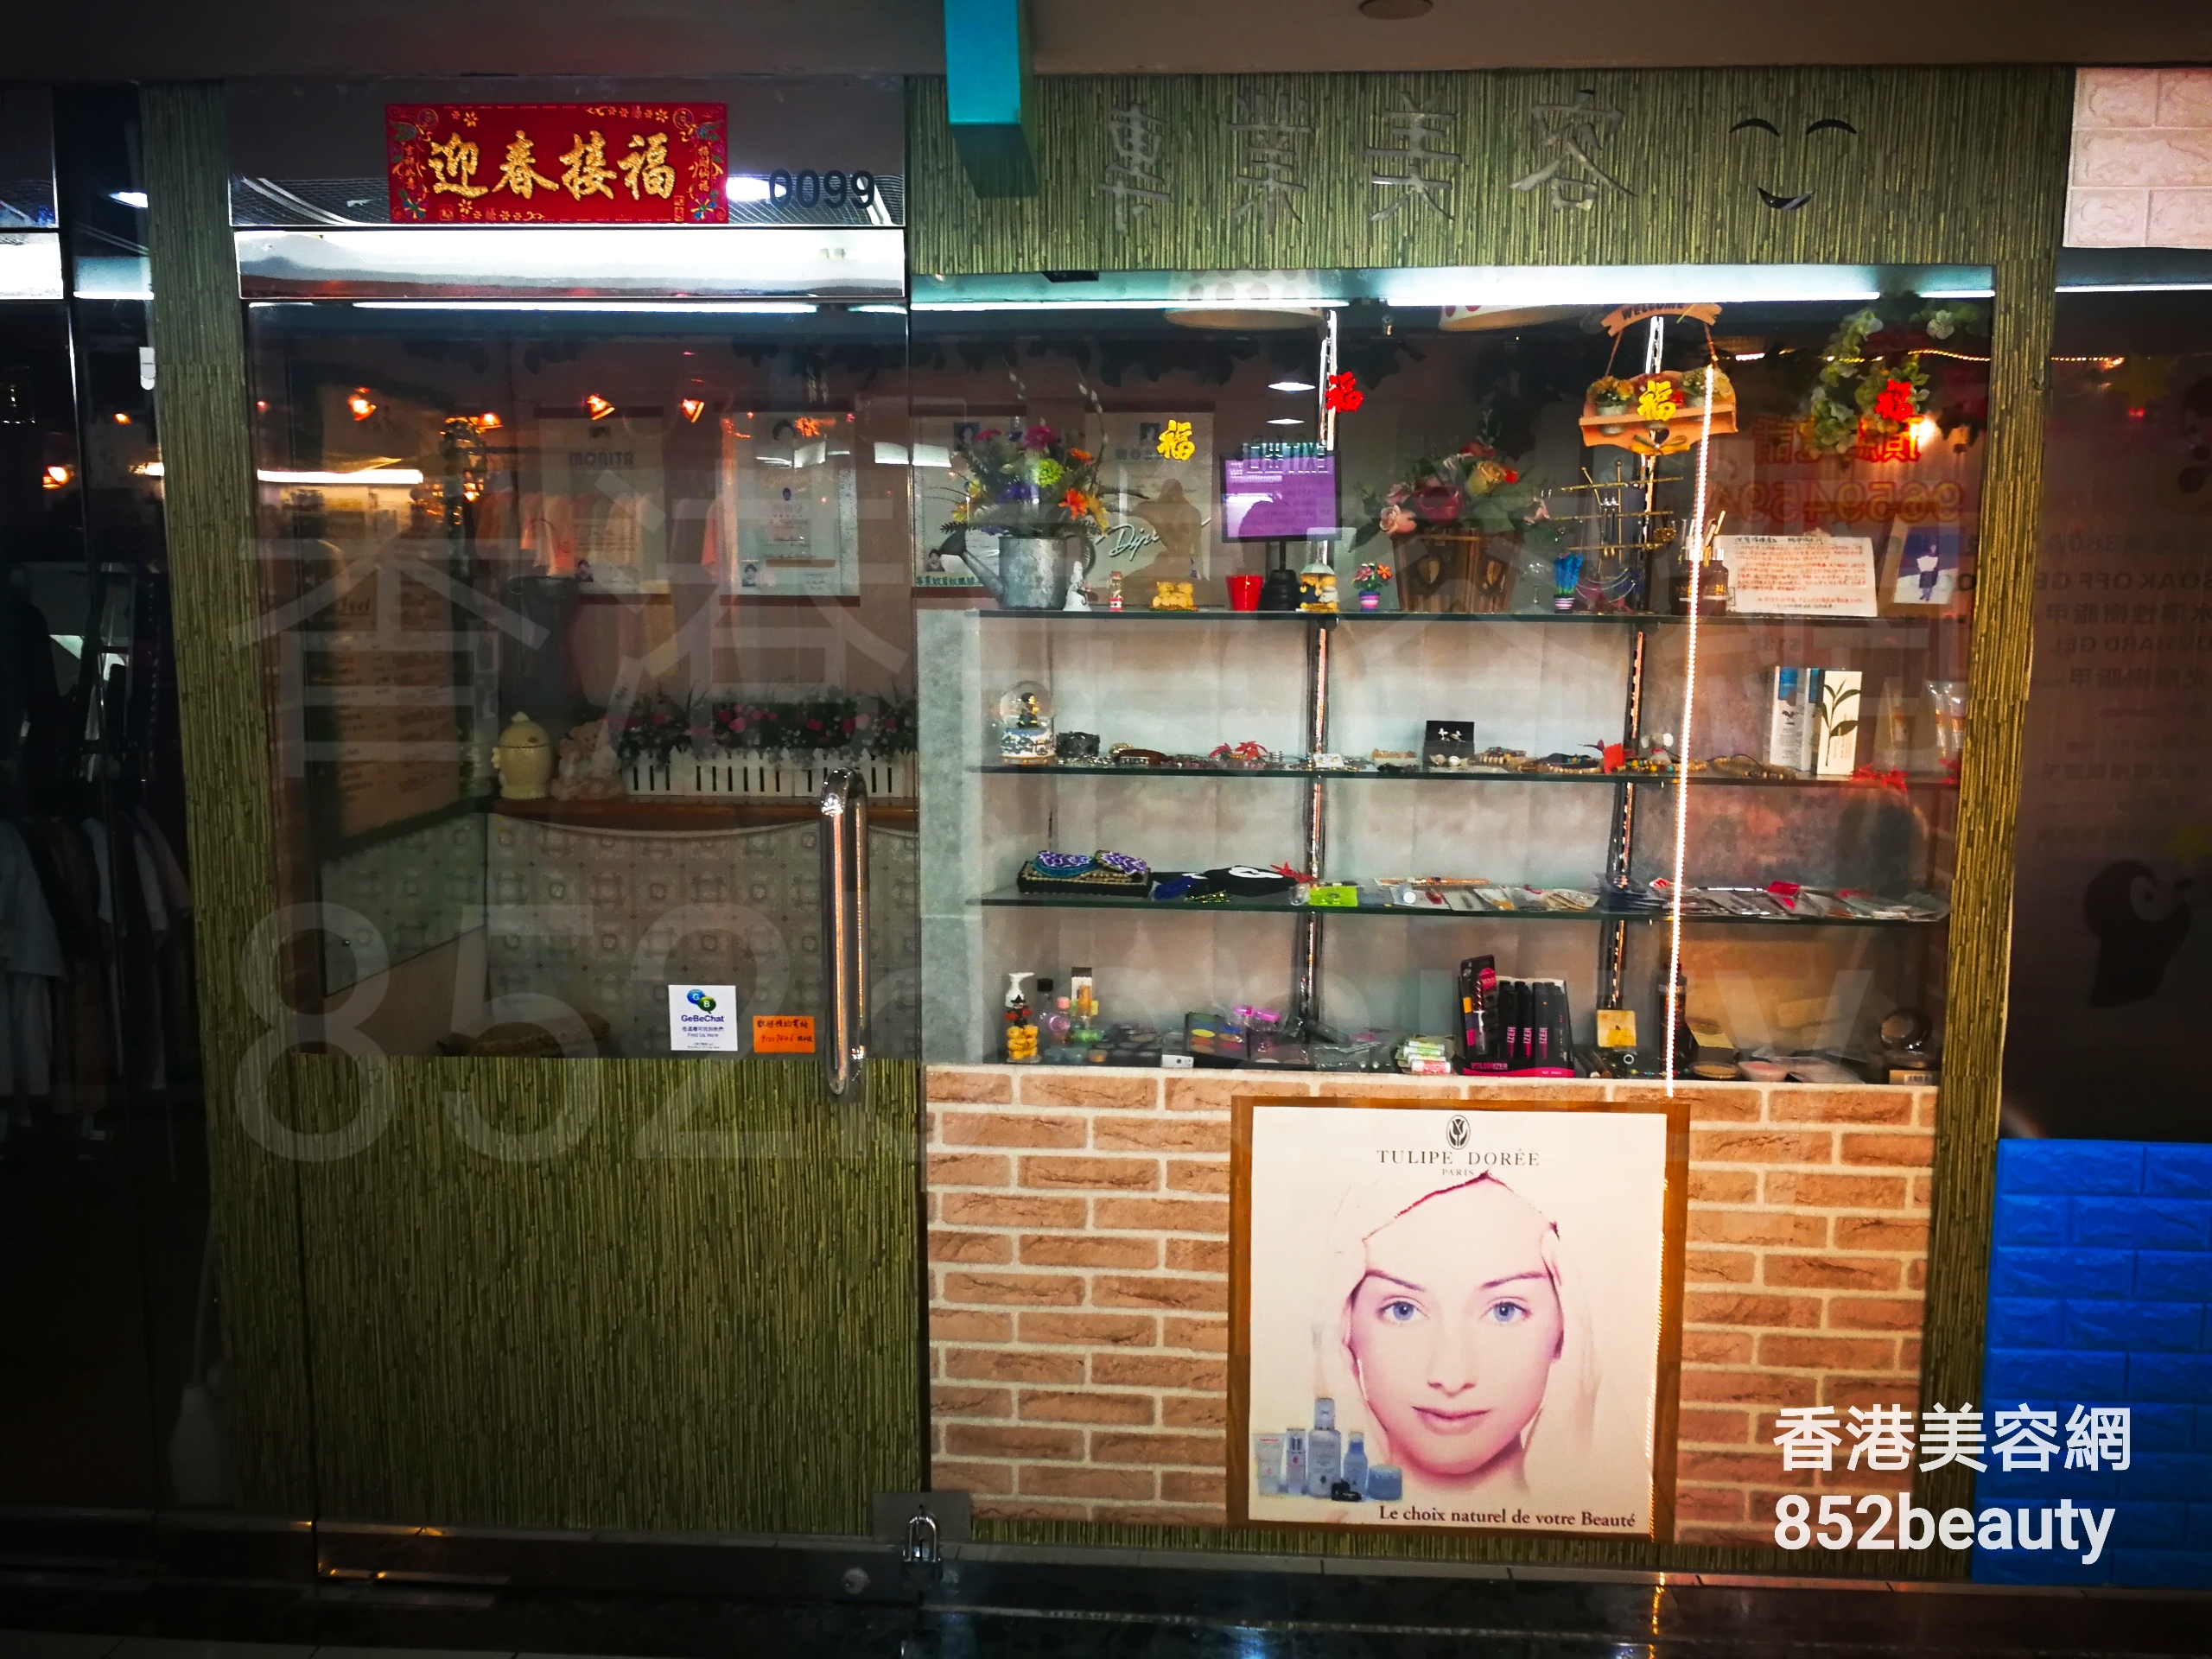 香港美容網 Hong Kong Beauty Salon 美容院 / 美容師: 專業美容